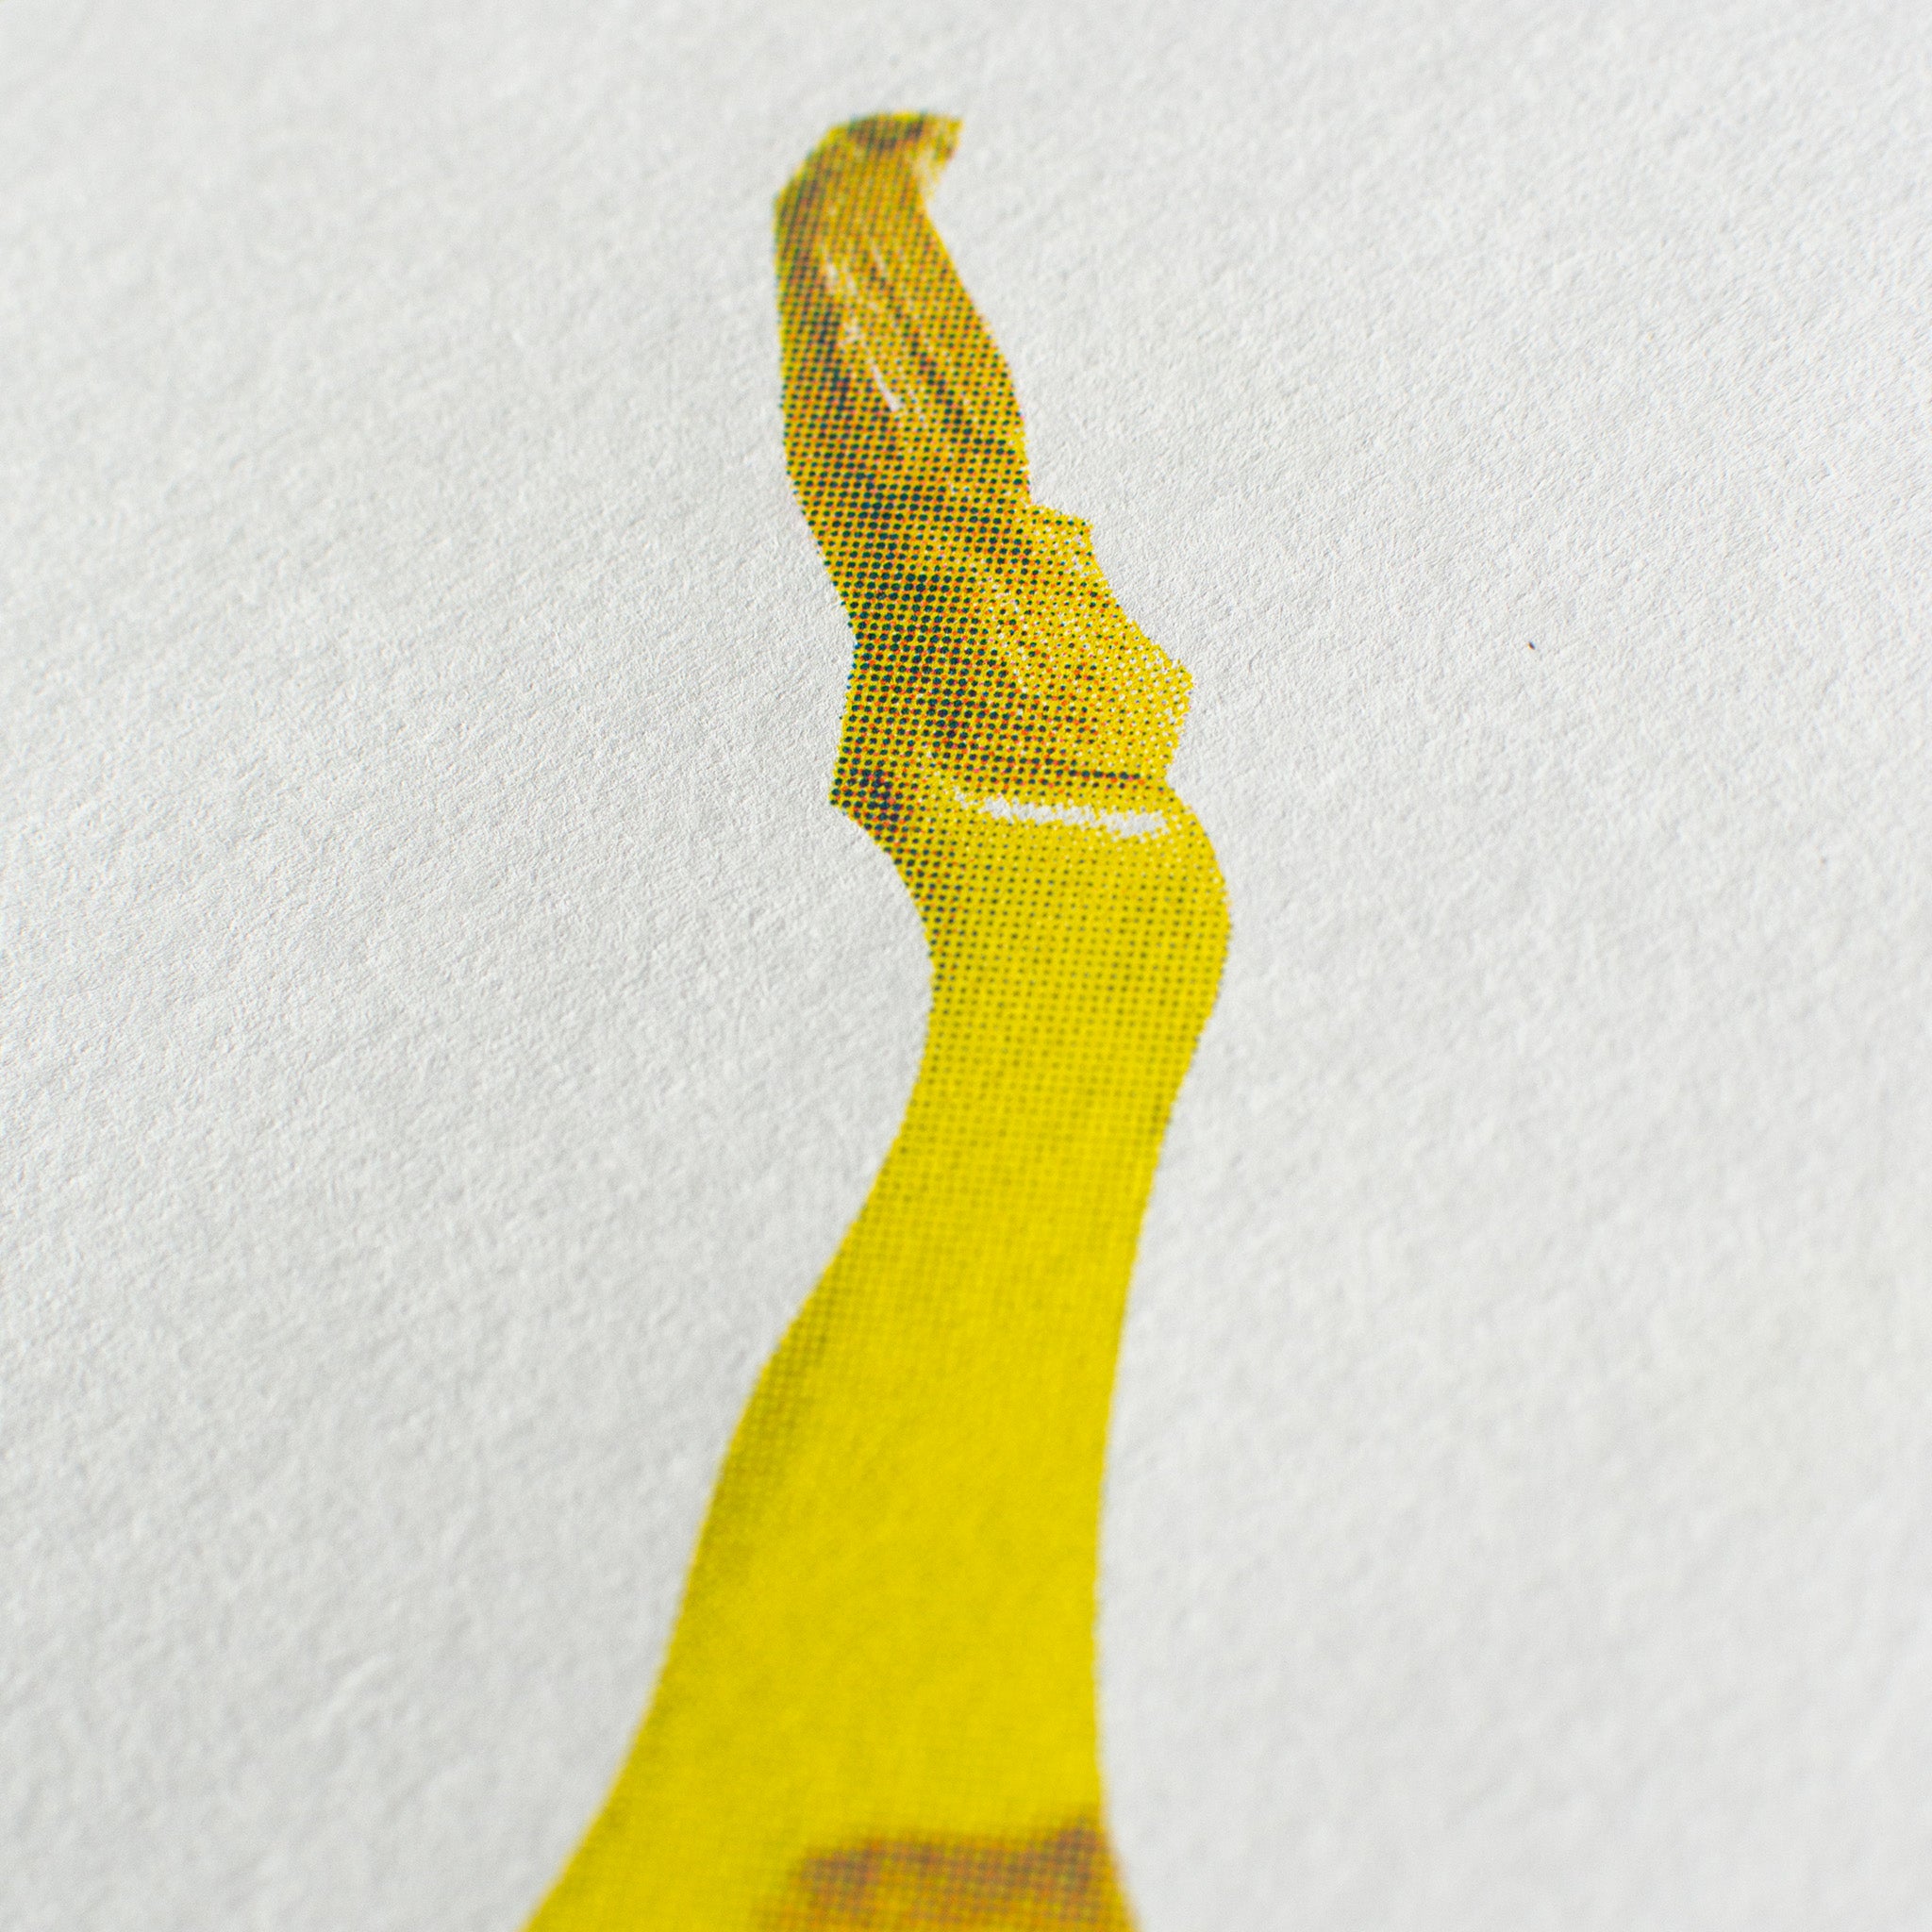 Risographie Artprint Banana